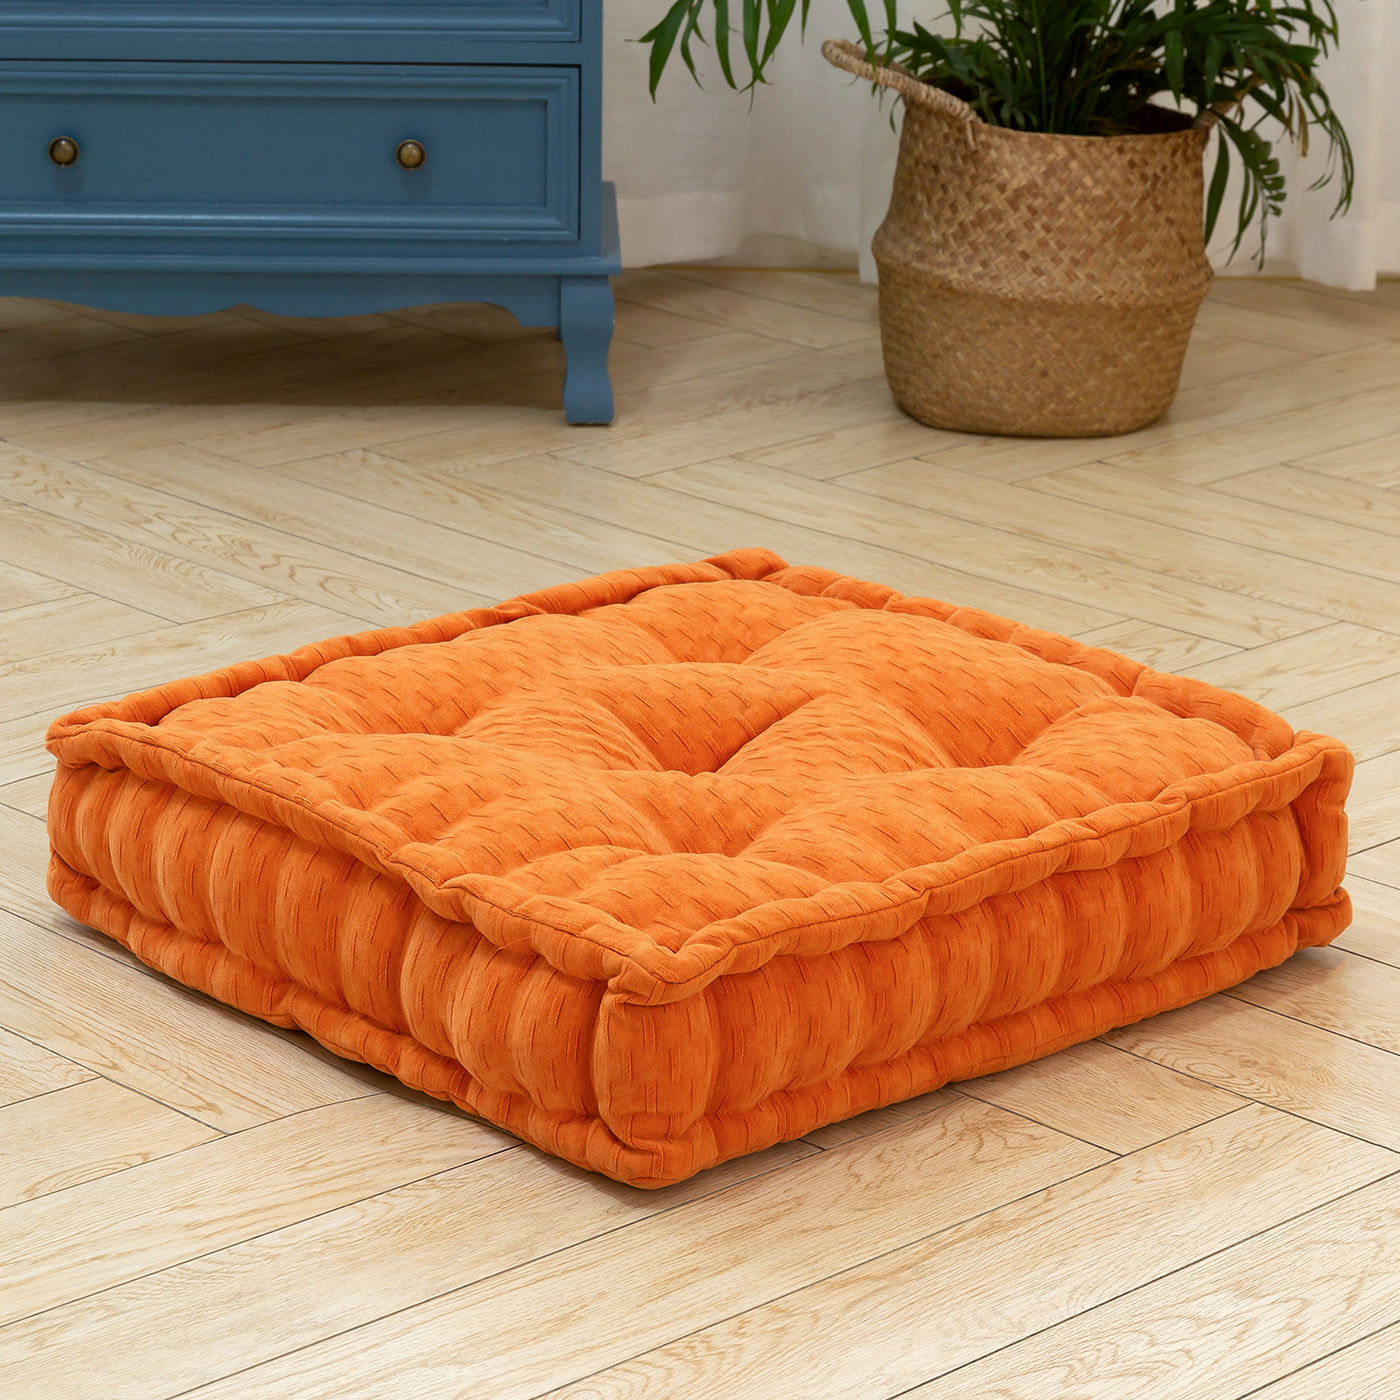 MAXYOYO Square Chenille Floor Pillow, Orange, 20"x20"x5.5"